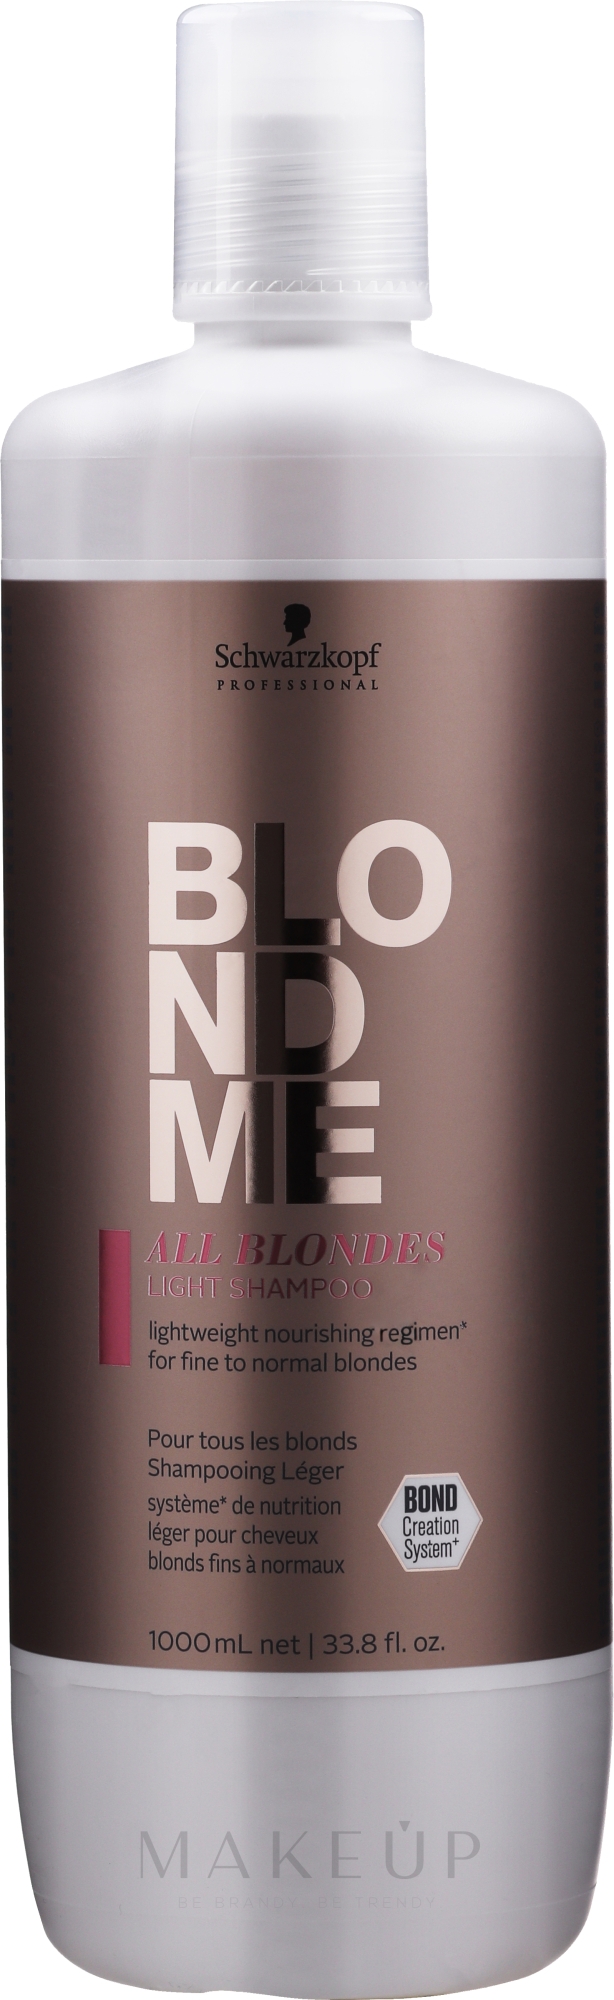 Feuchtigkeitsspendendes Shampoo für dünne blonde Haare - Schwarzkopf Professional Blondme All Blondes Light Shampoo — Bild 1000 ml